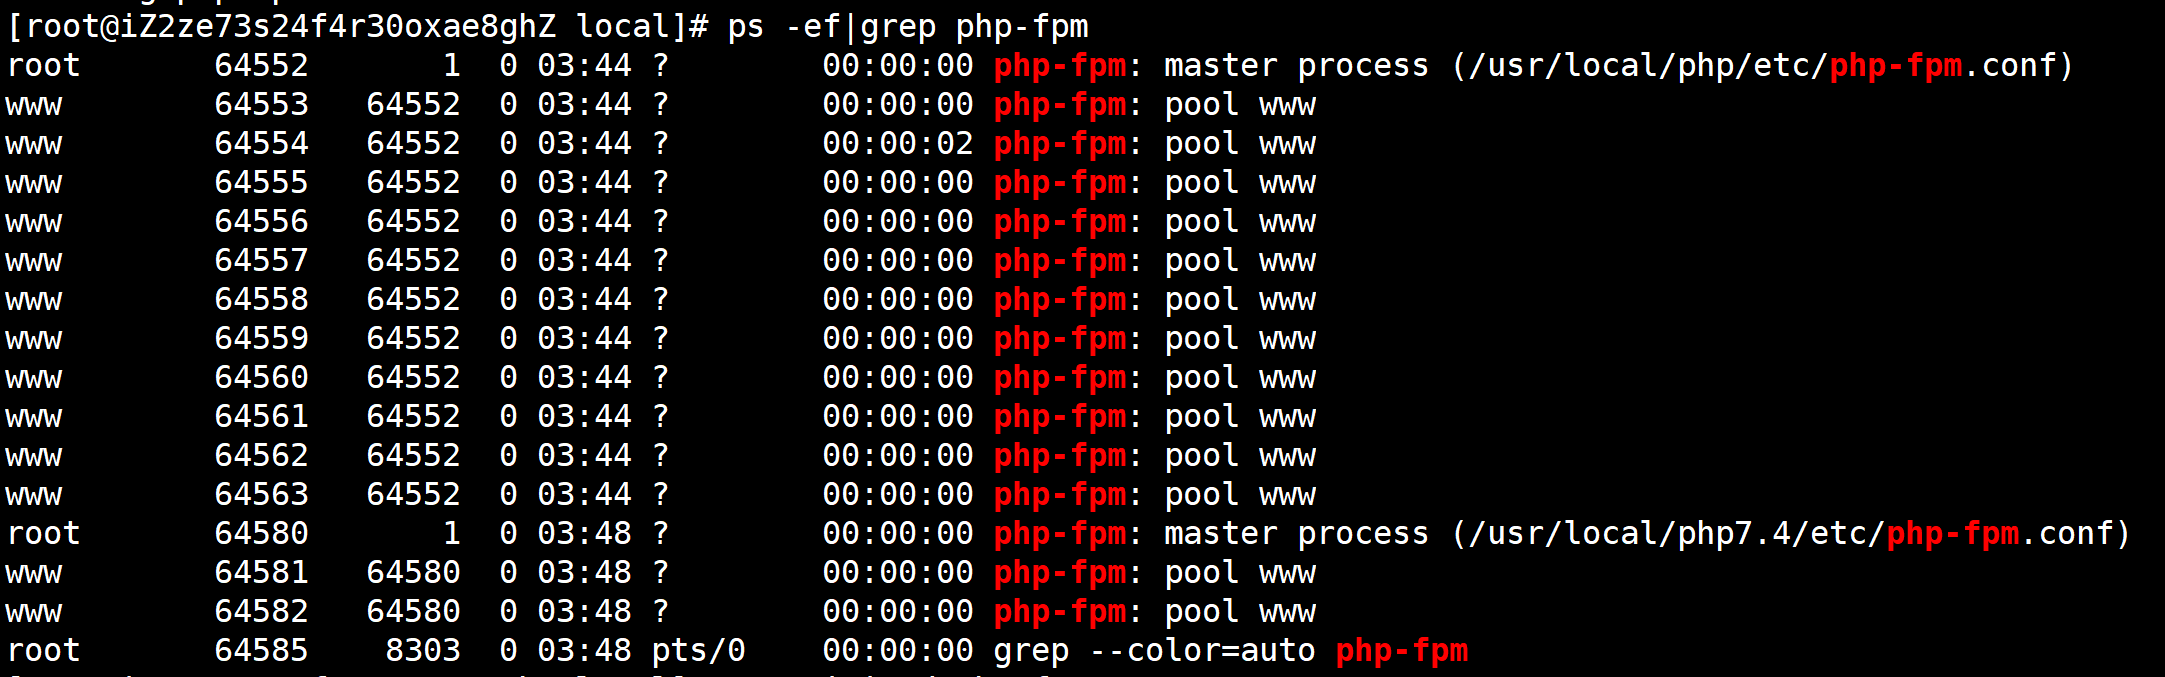 根据如上图所示的返回结果里的<code>master process</code>来判断是否删除成功，这是还没有删除PHP7.4进程状态